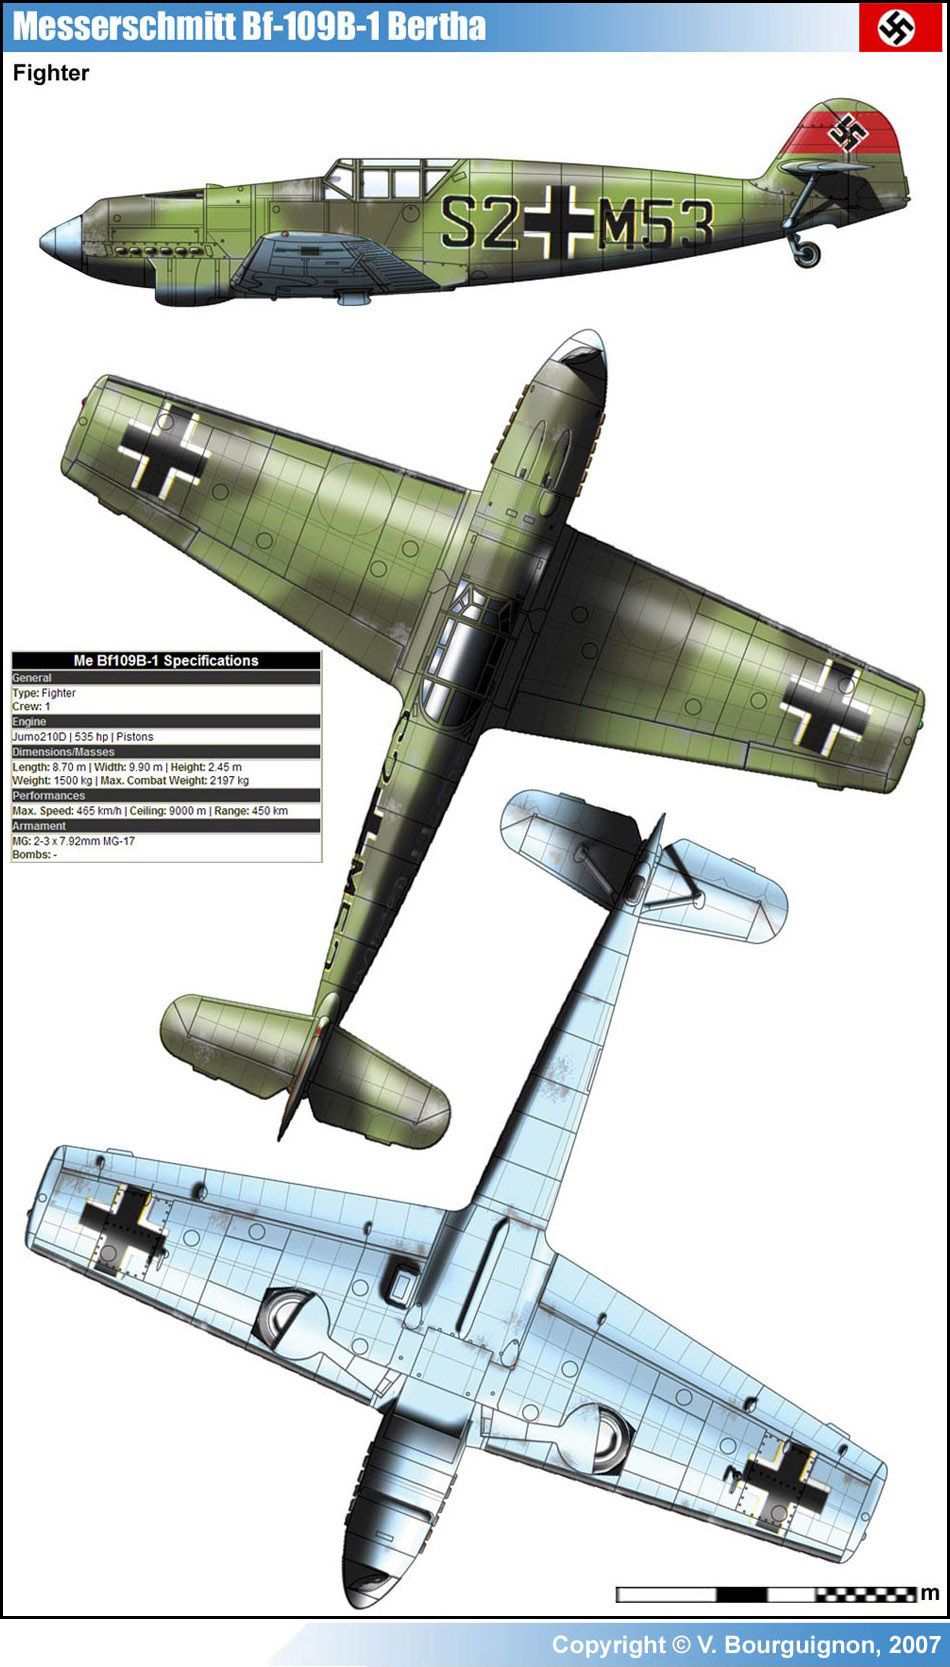 Messerschmitt Bf 109B-1